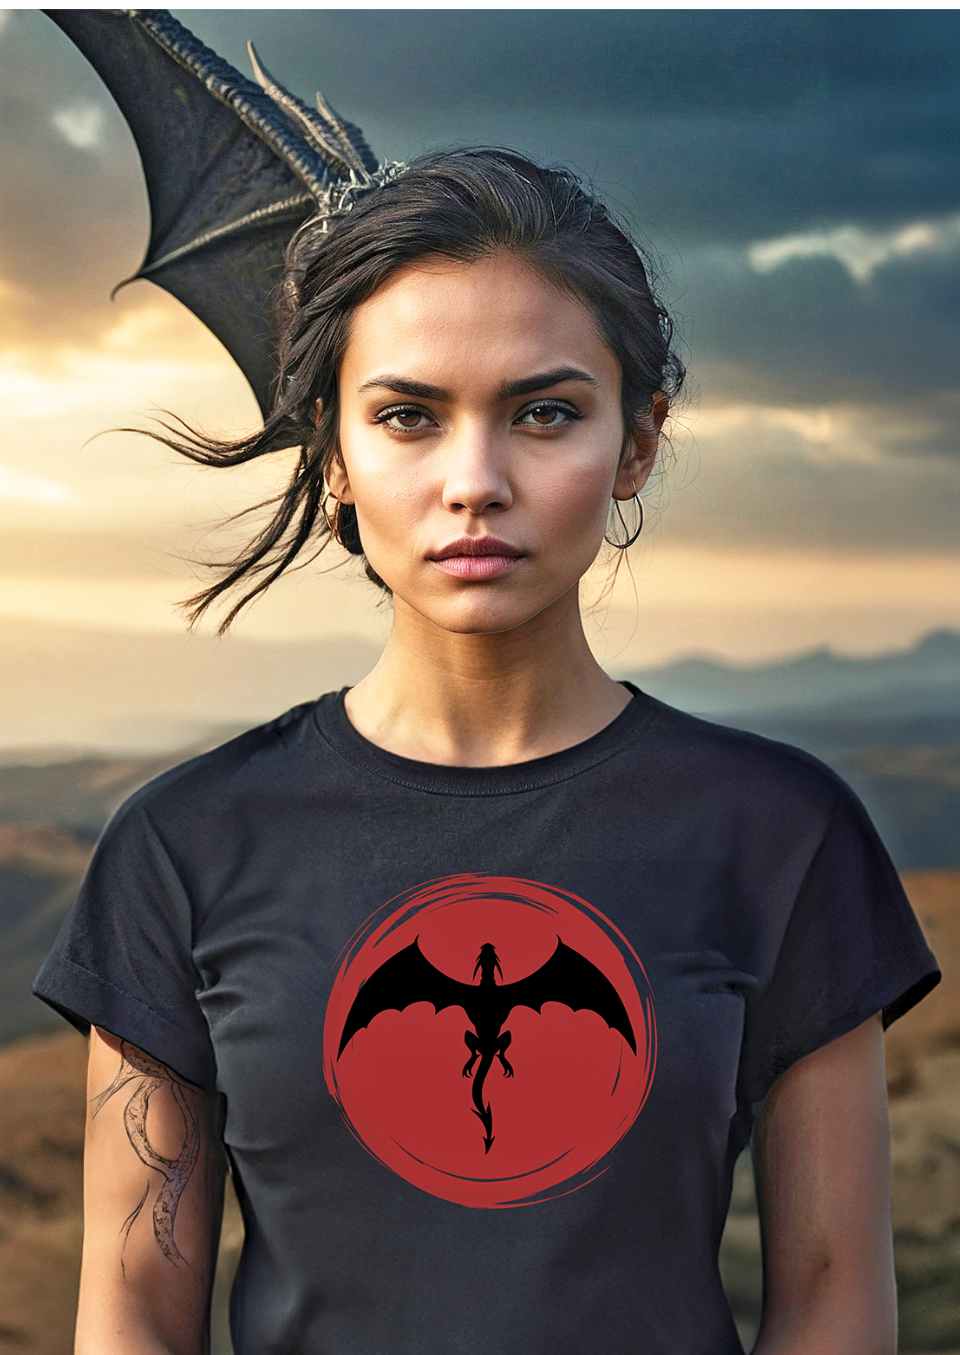 Kategoriebild für die Saga of the dragon Collection von Runental.de. Junge Frau trägt ein Saga of the dragon T-Shirt in schwarz, am Himmel kreist ein Drache.